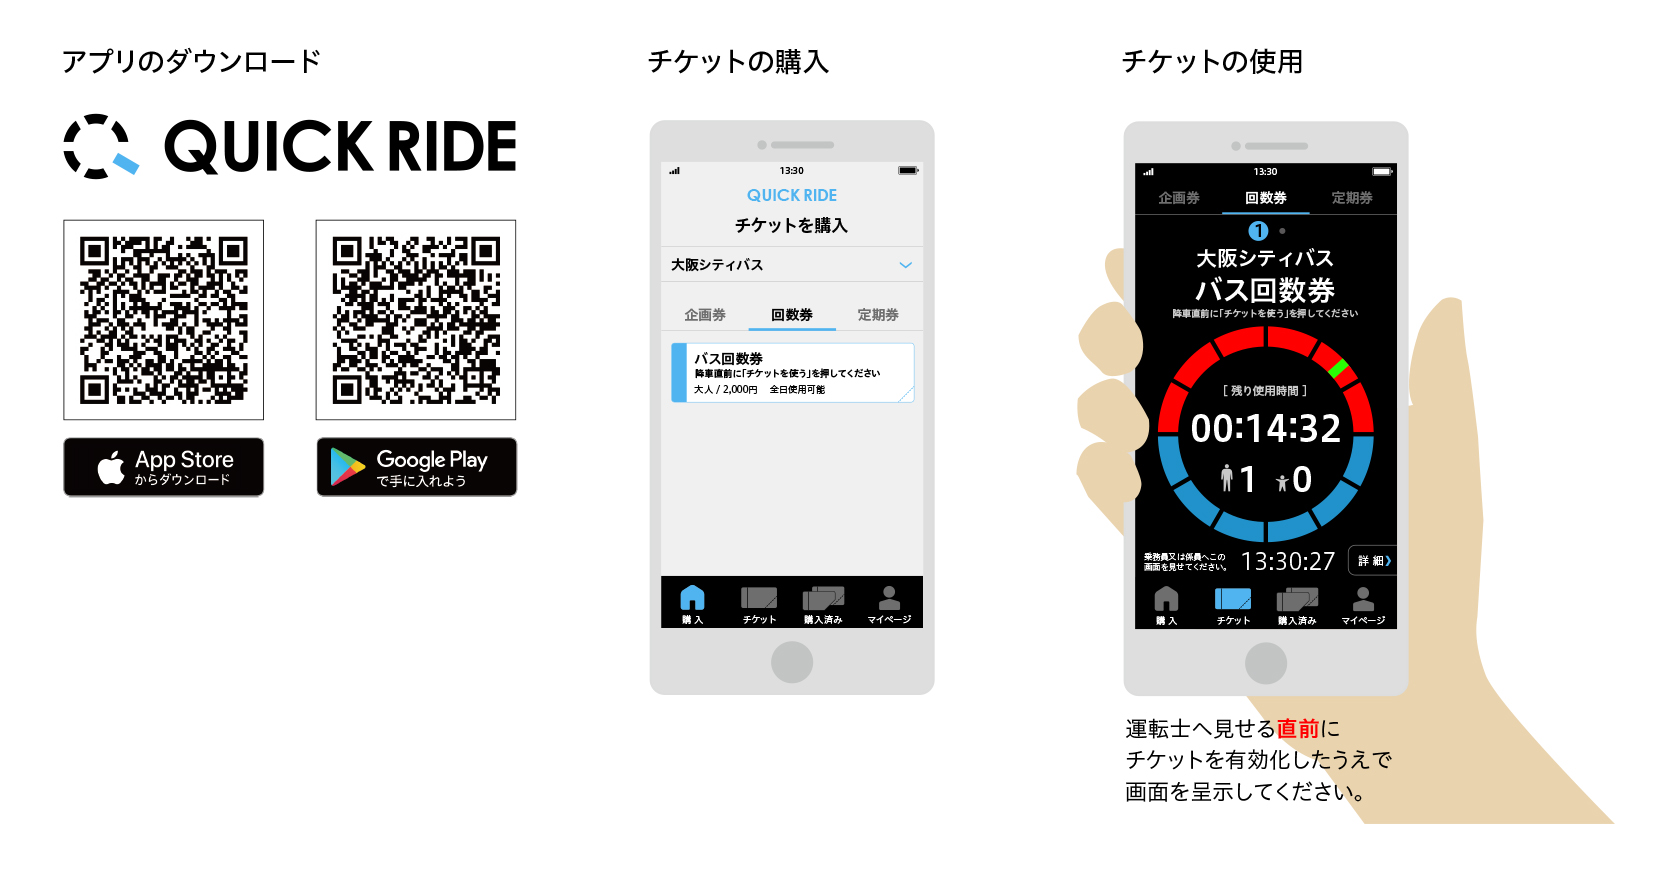 スマホ乗車券アプリ「QUICK RIDE」サービス概要